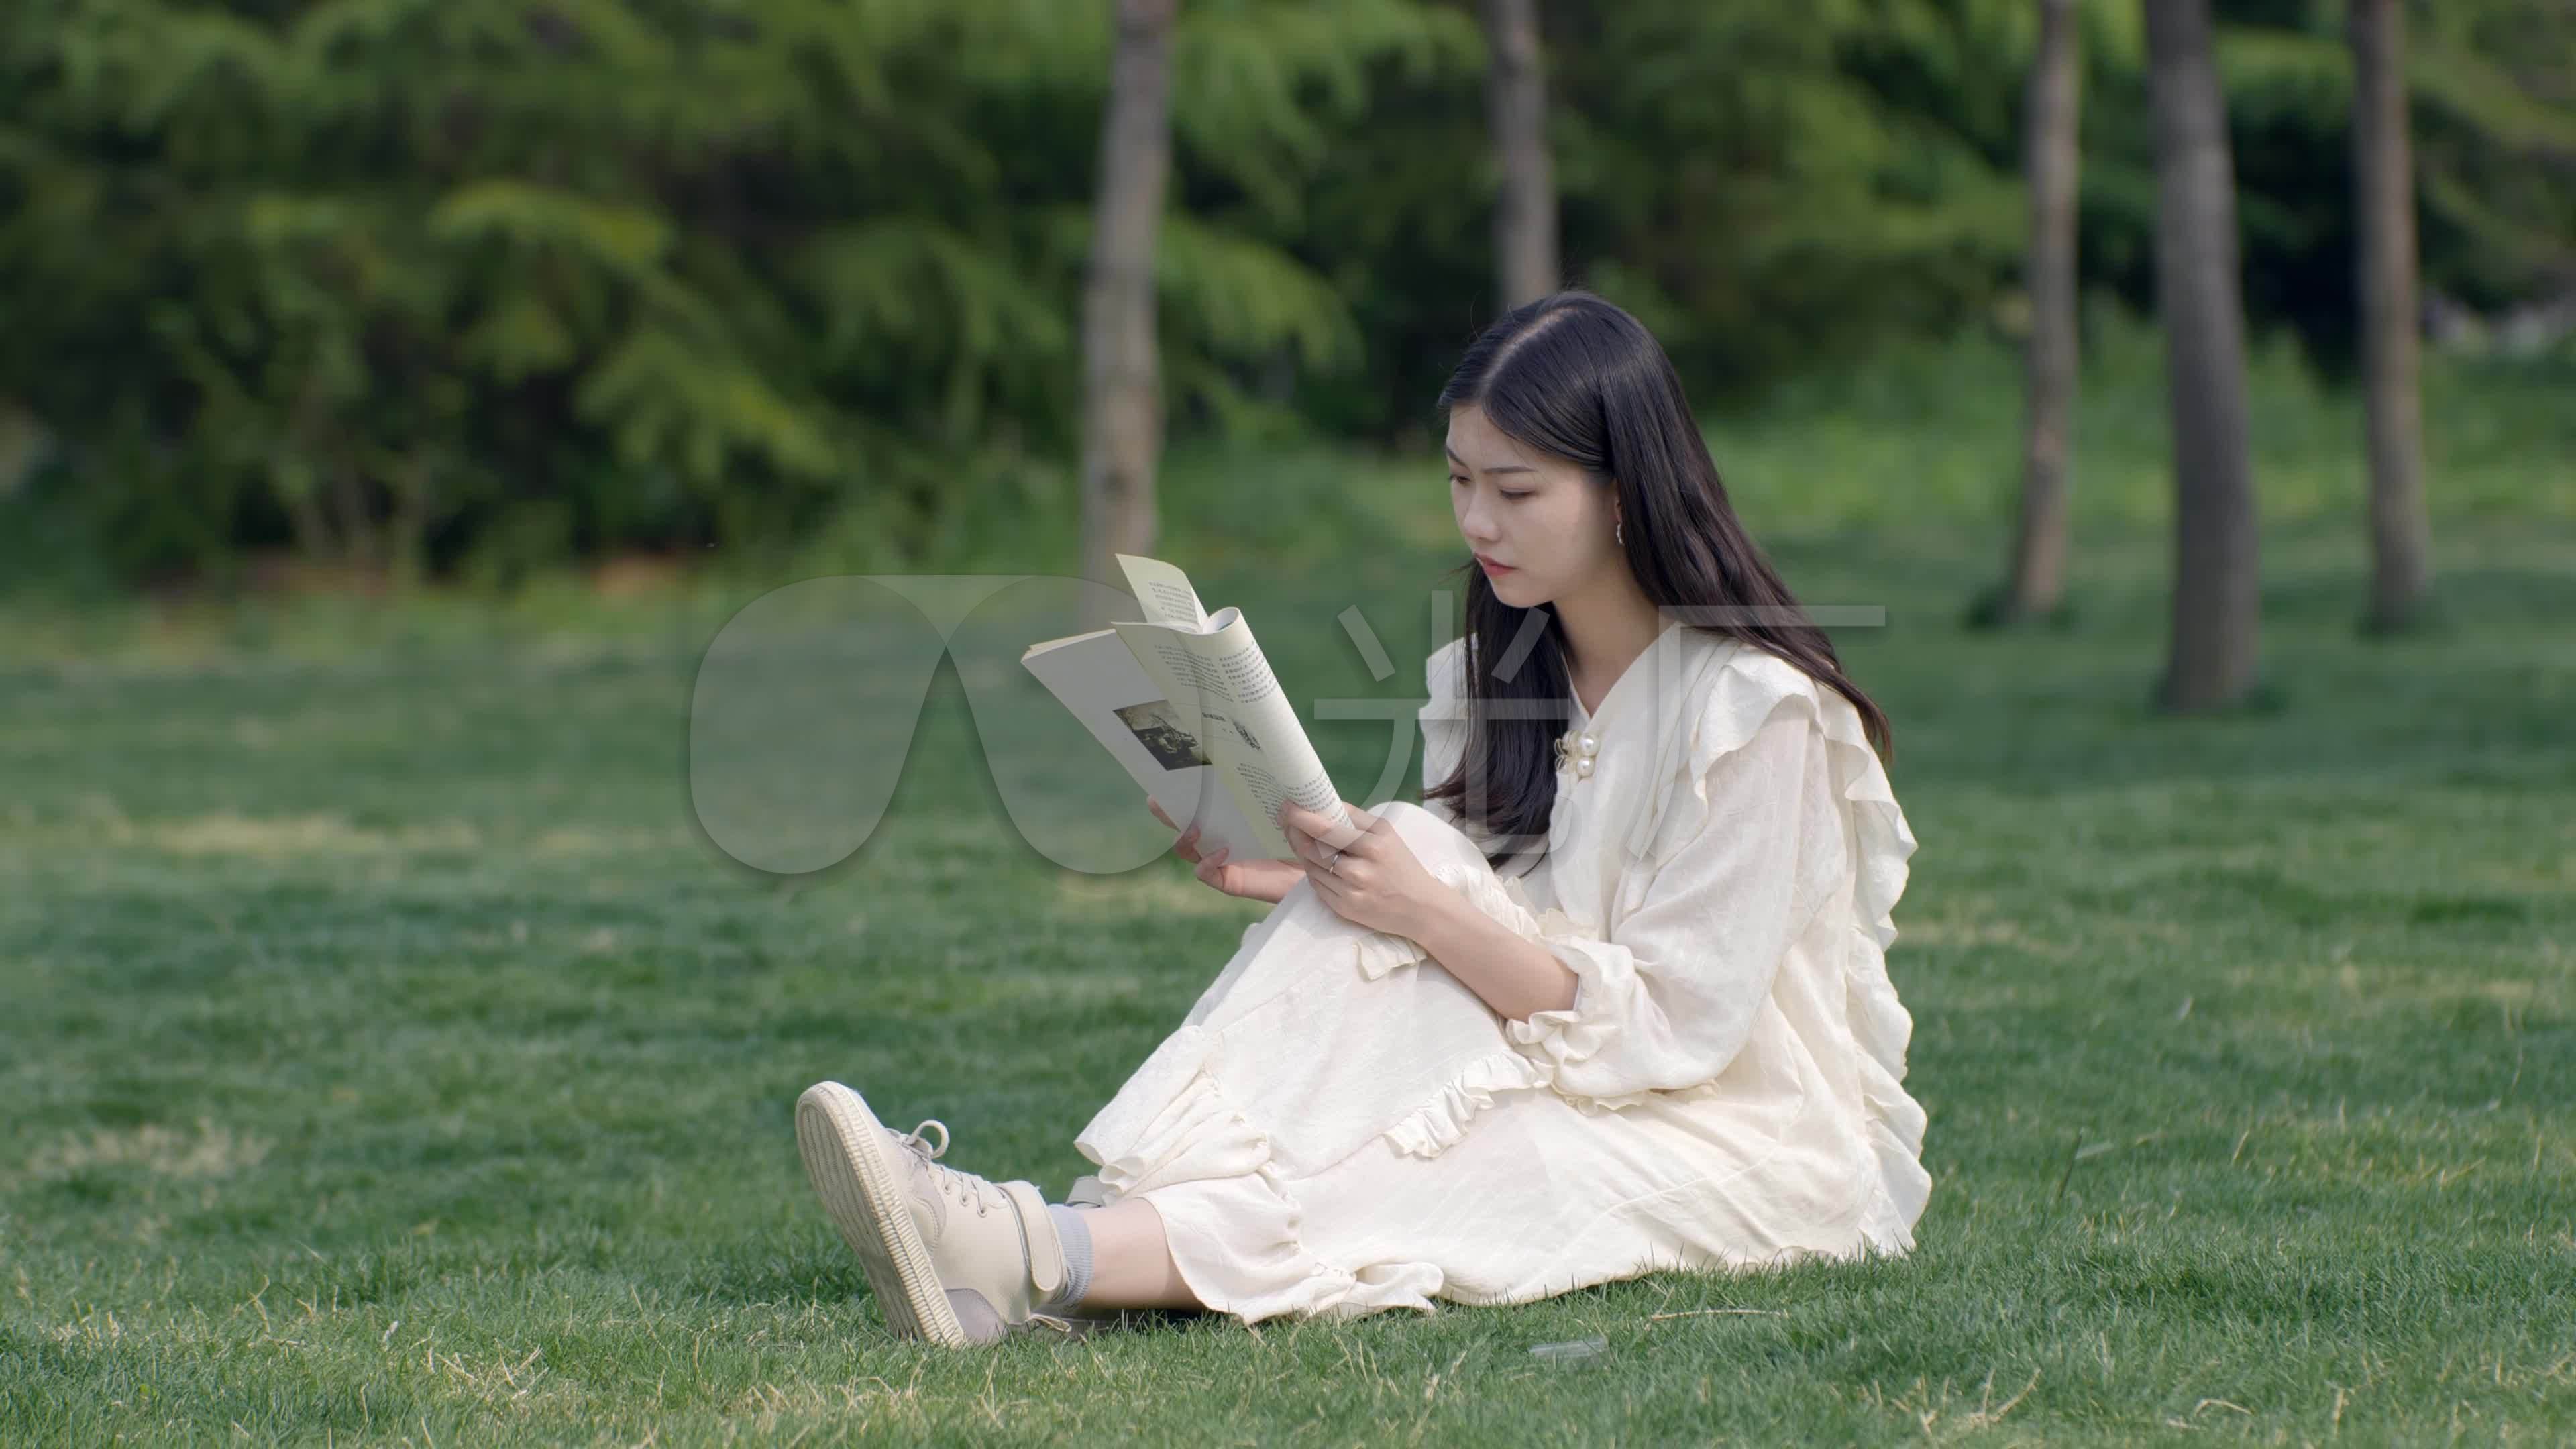 坐在校園草坪上看書的女學生圖片素材-JPG圖片尺寸6720 × 4480px-高清圖案500635847-zh.lovepik.com